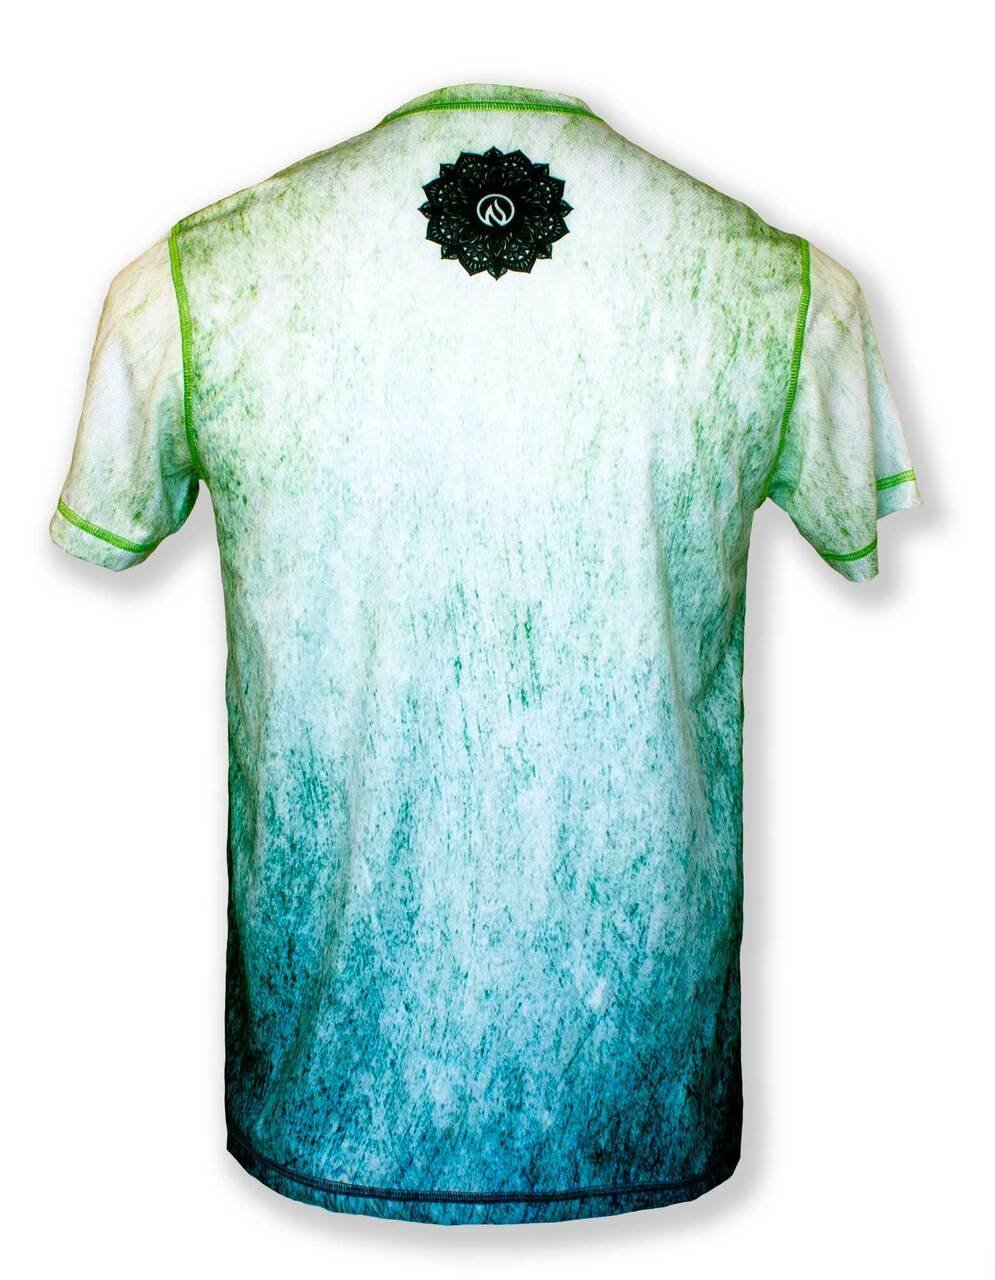 INKnBURN Men's Gentle Soul Tech Shirt (S, M, L, XL)